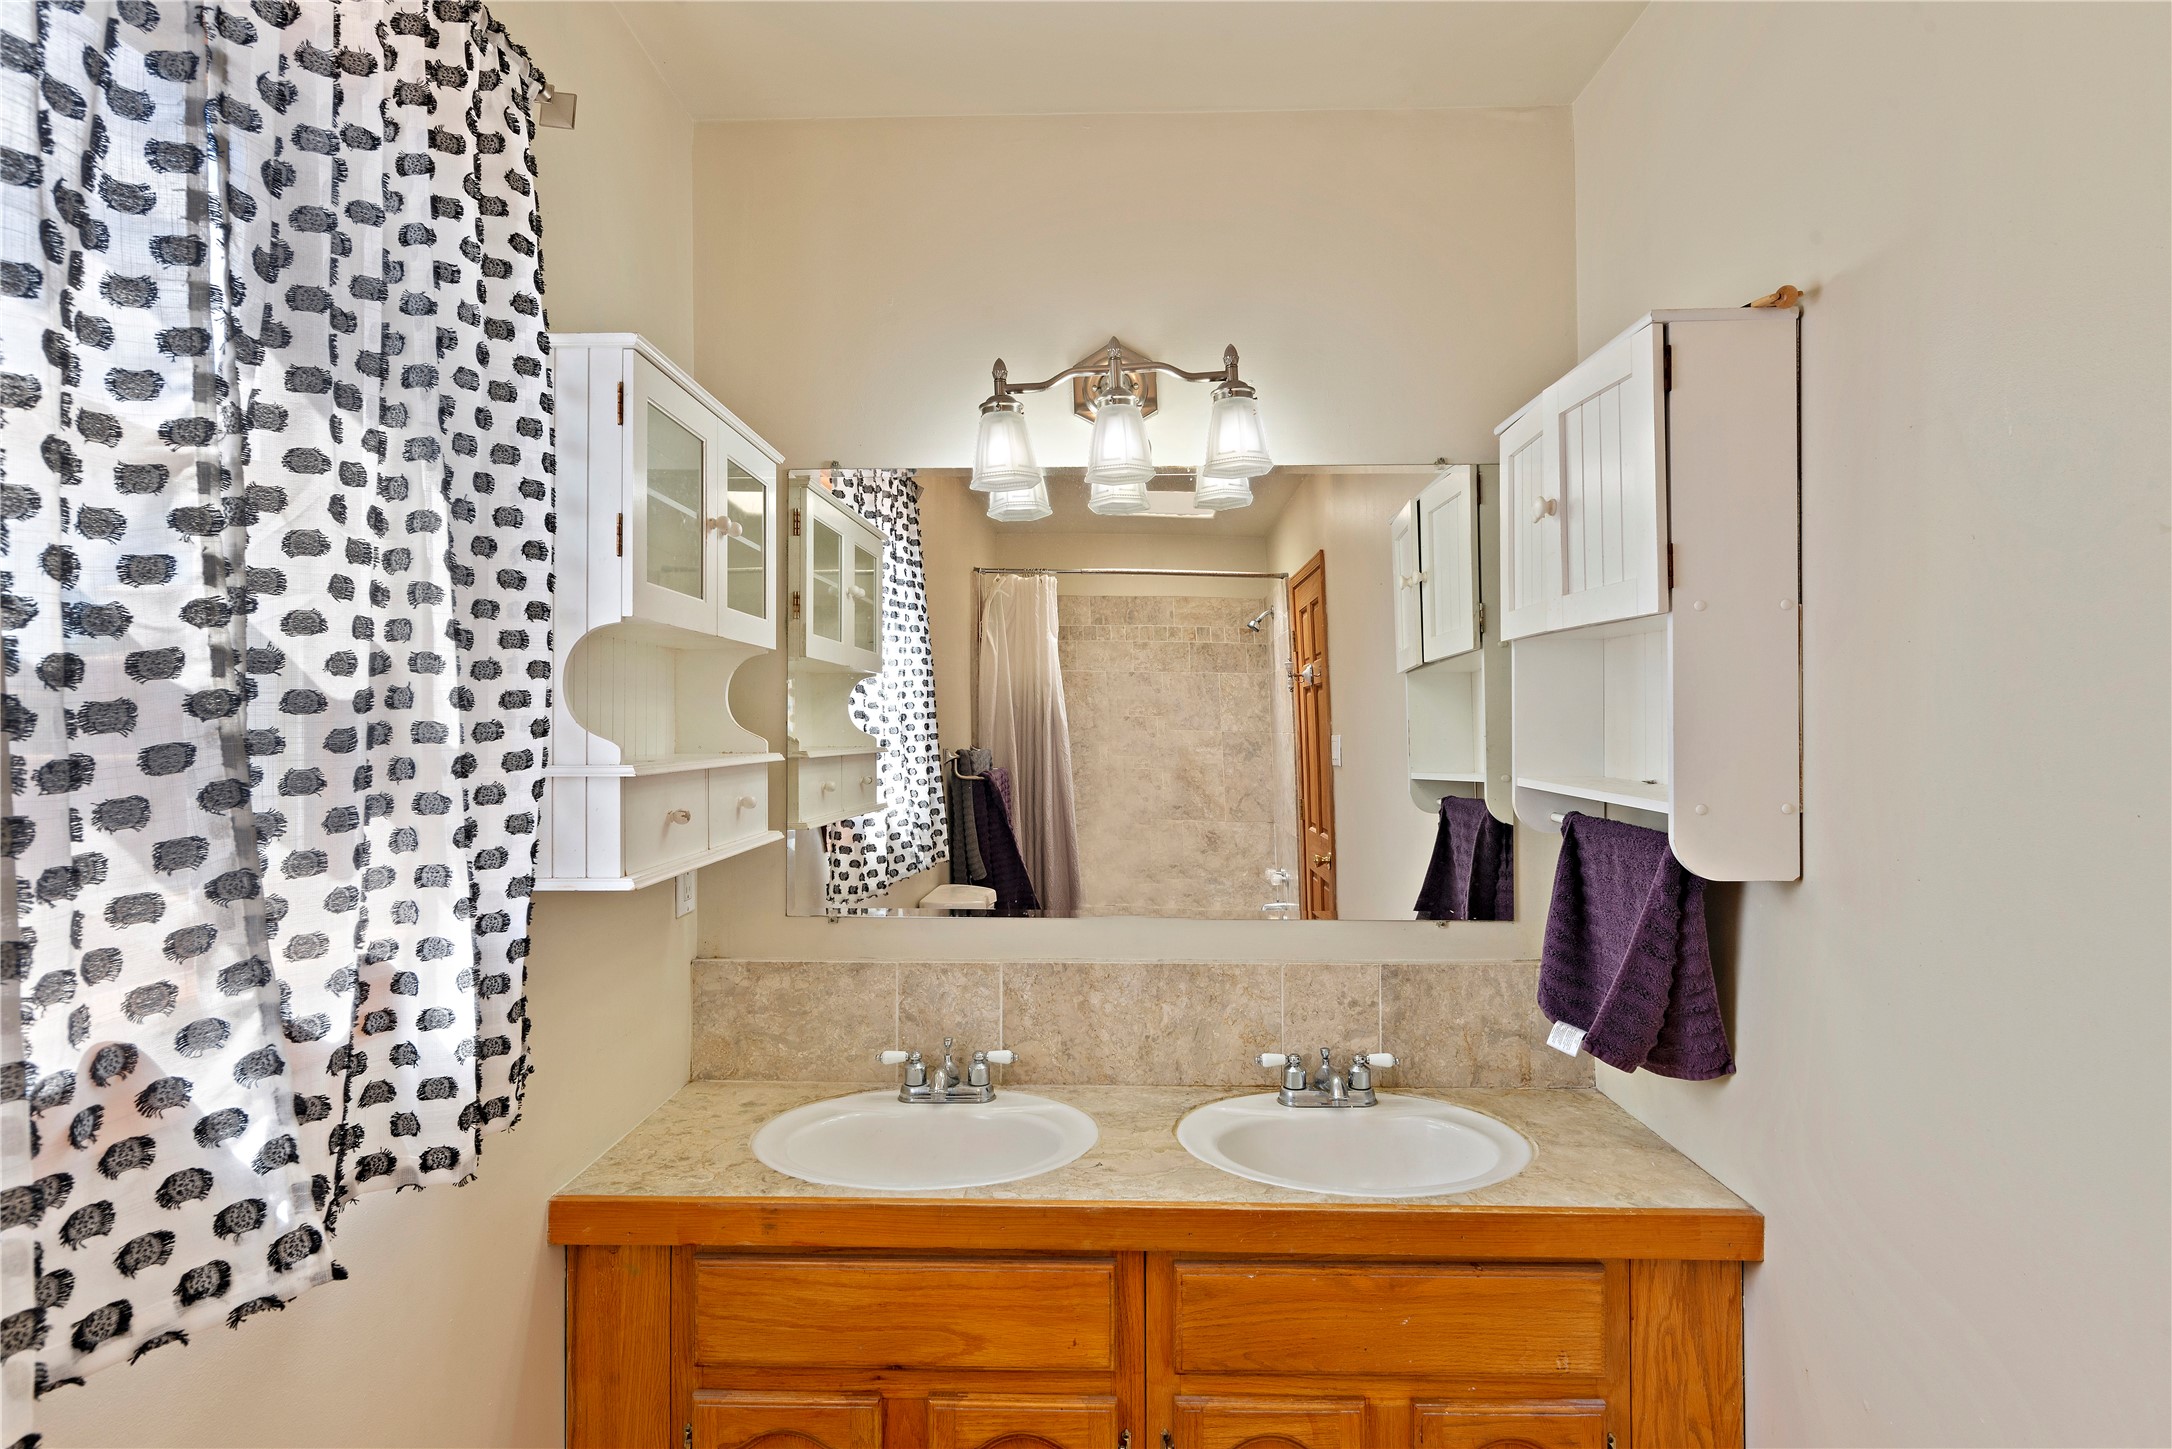 2909 Pueblo Pintado, Santa Fe, New Mexico 87507, 3 Bedrooms Bedrooms, ,2 BathroomsBathrooms,Residential,For Sale,2909 Pueblo Pintado,202232059